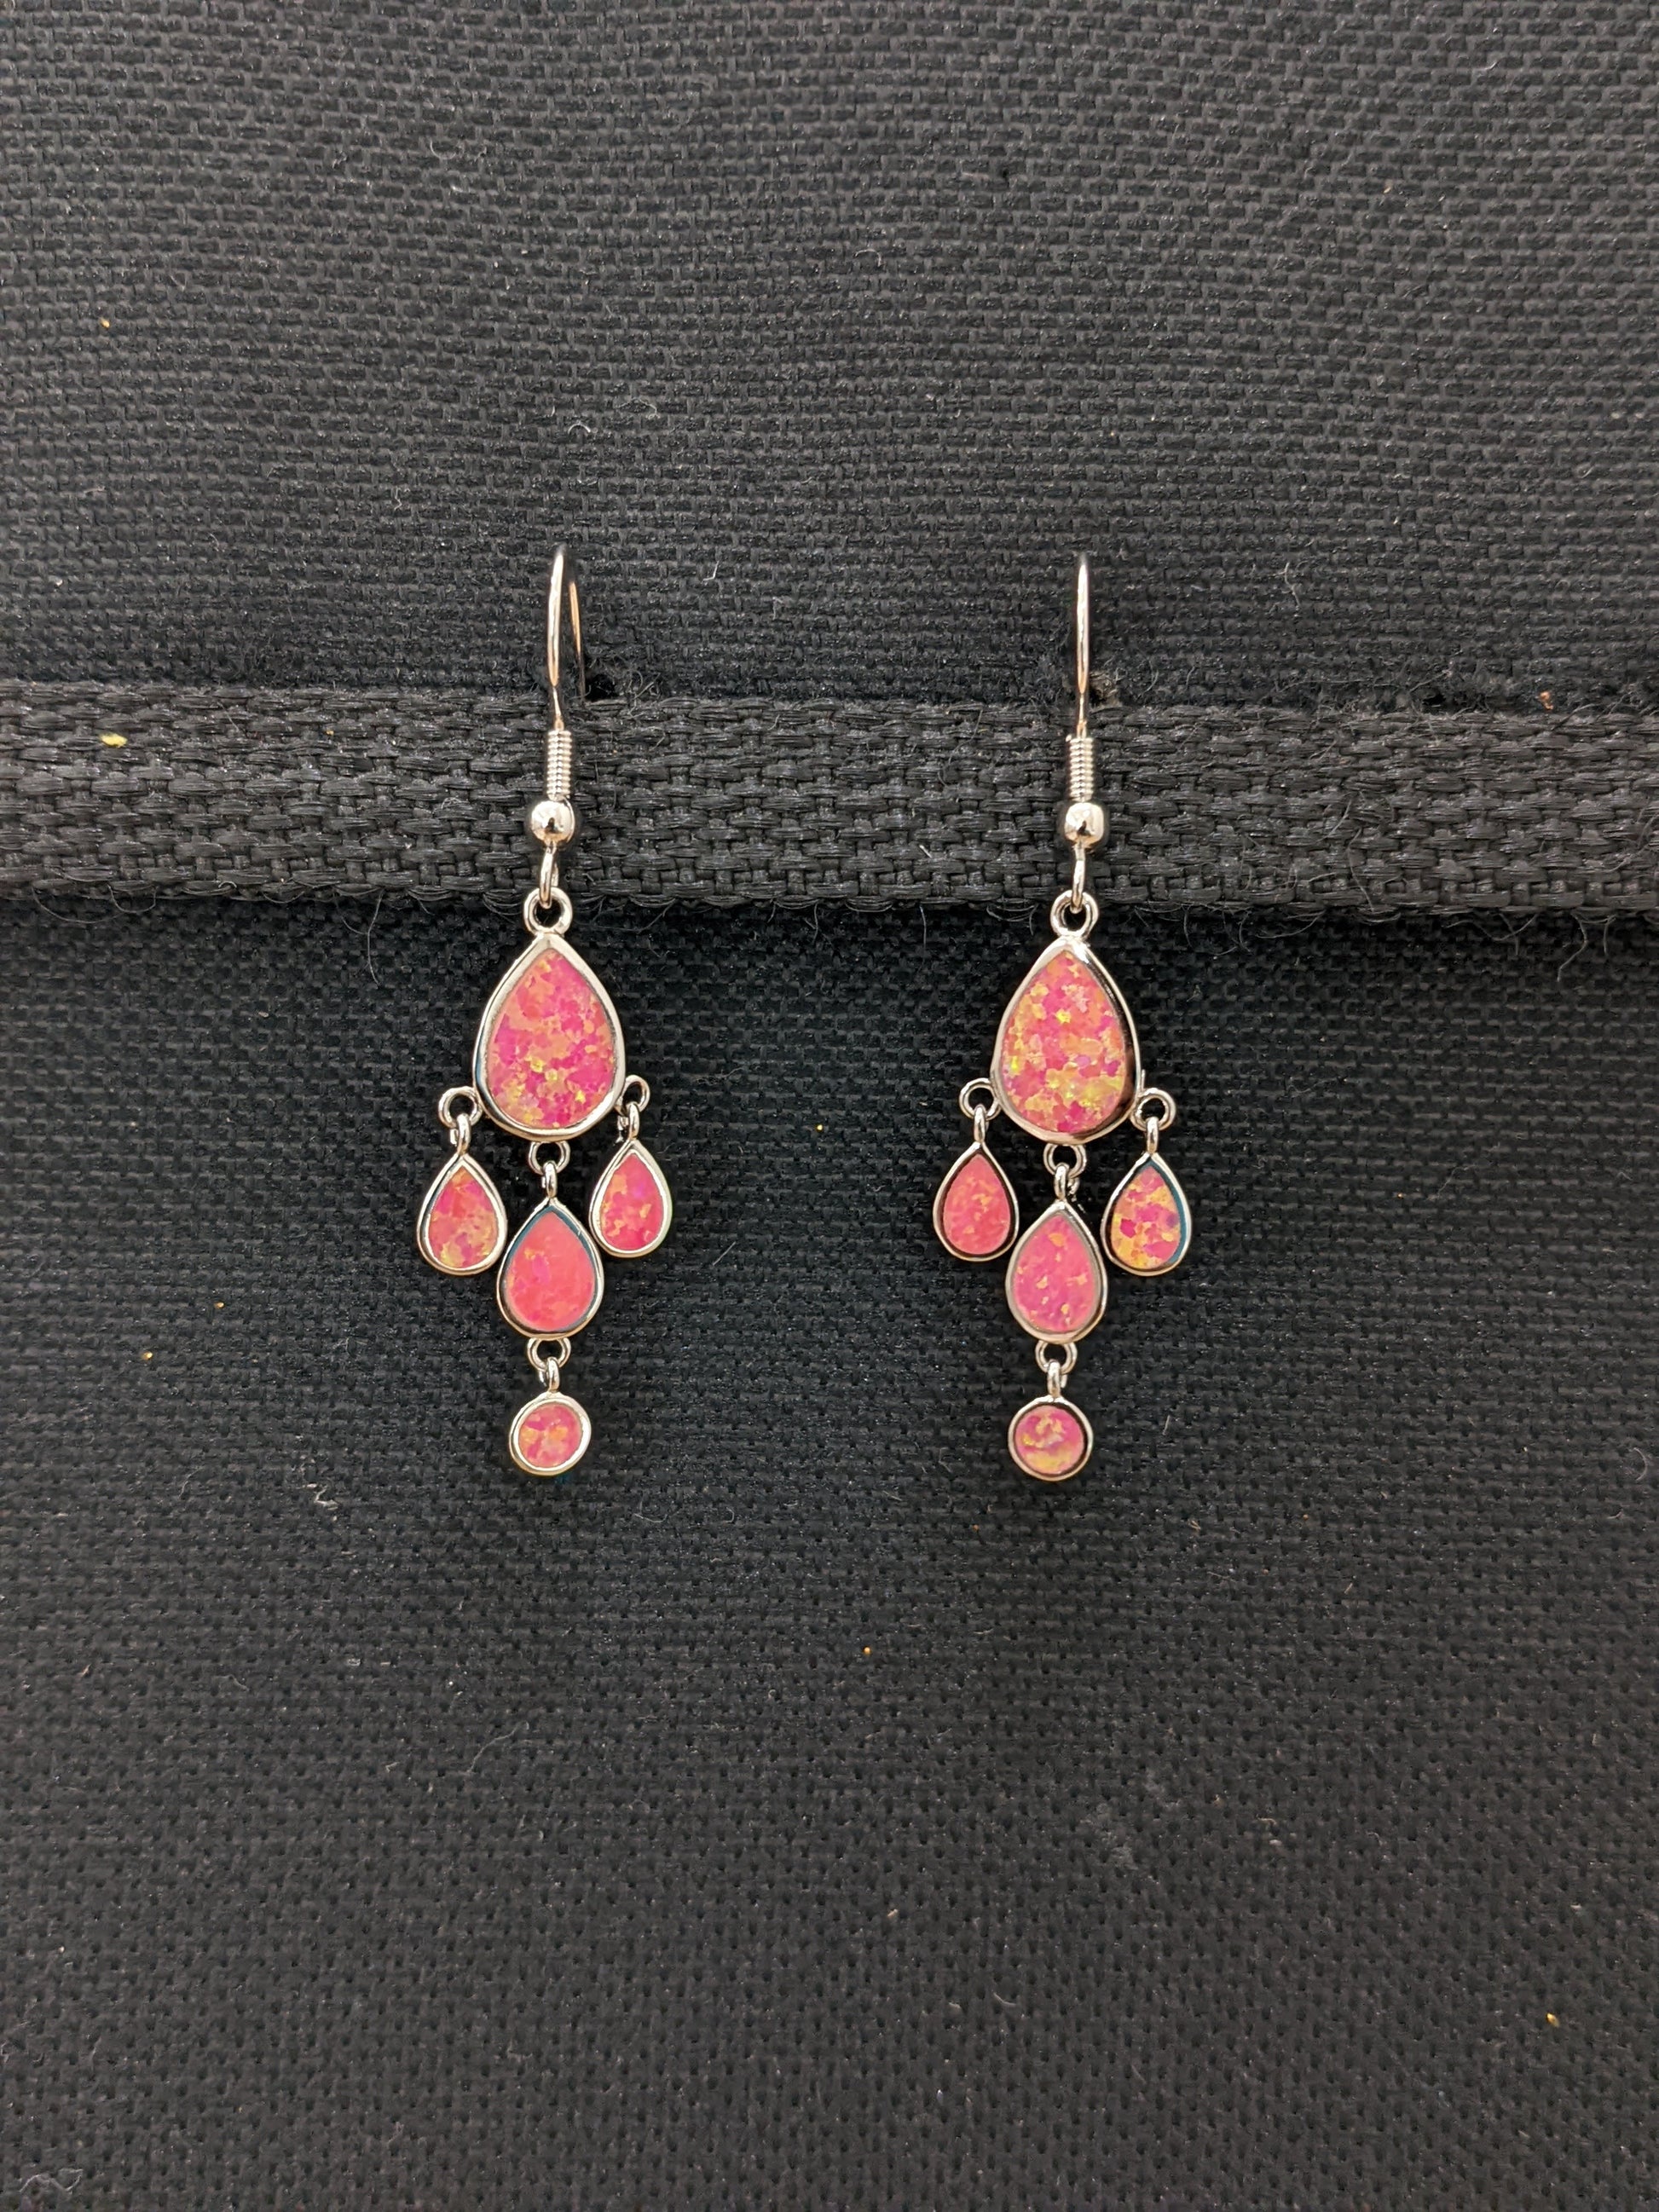 Pink opal stone multiple tear drop dangle earrings - Simpliful